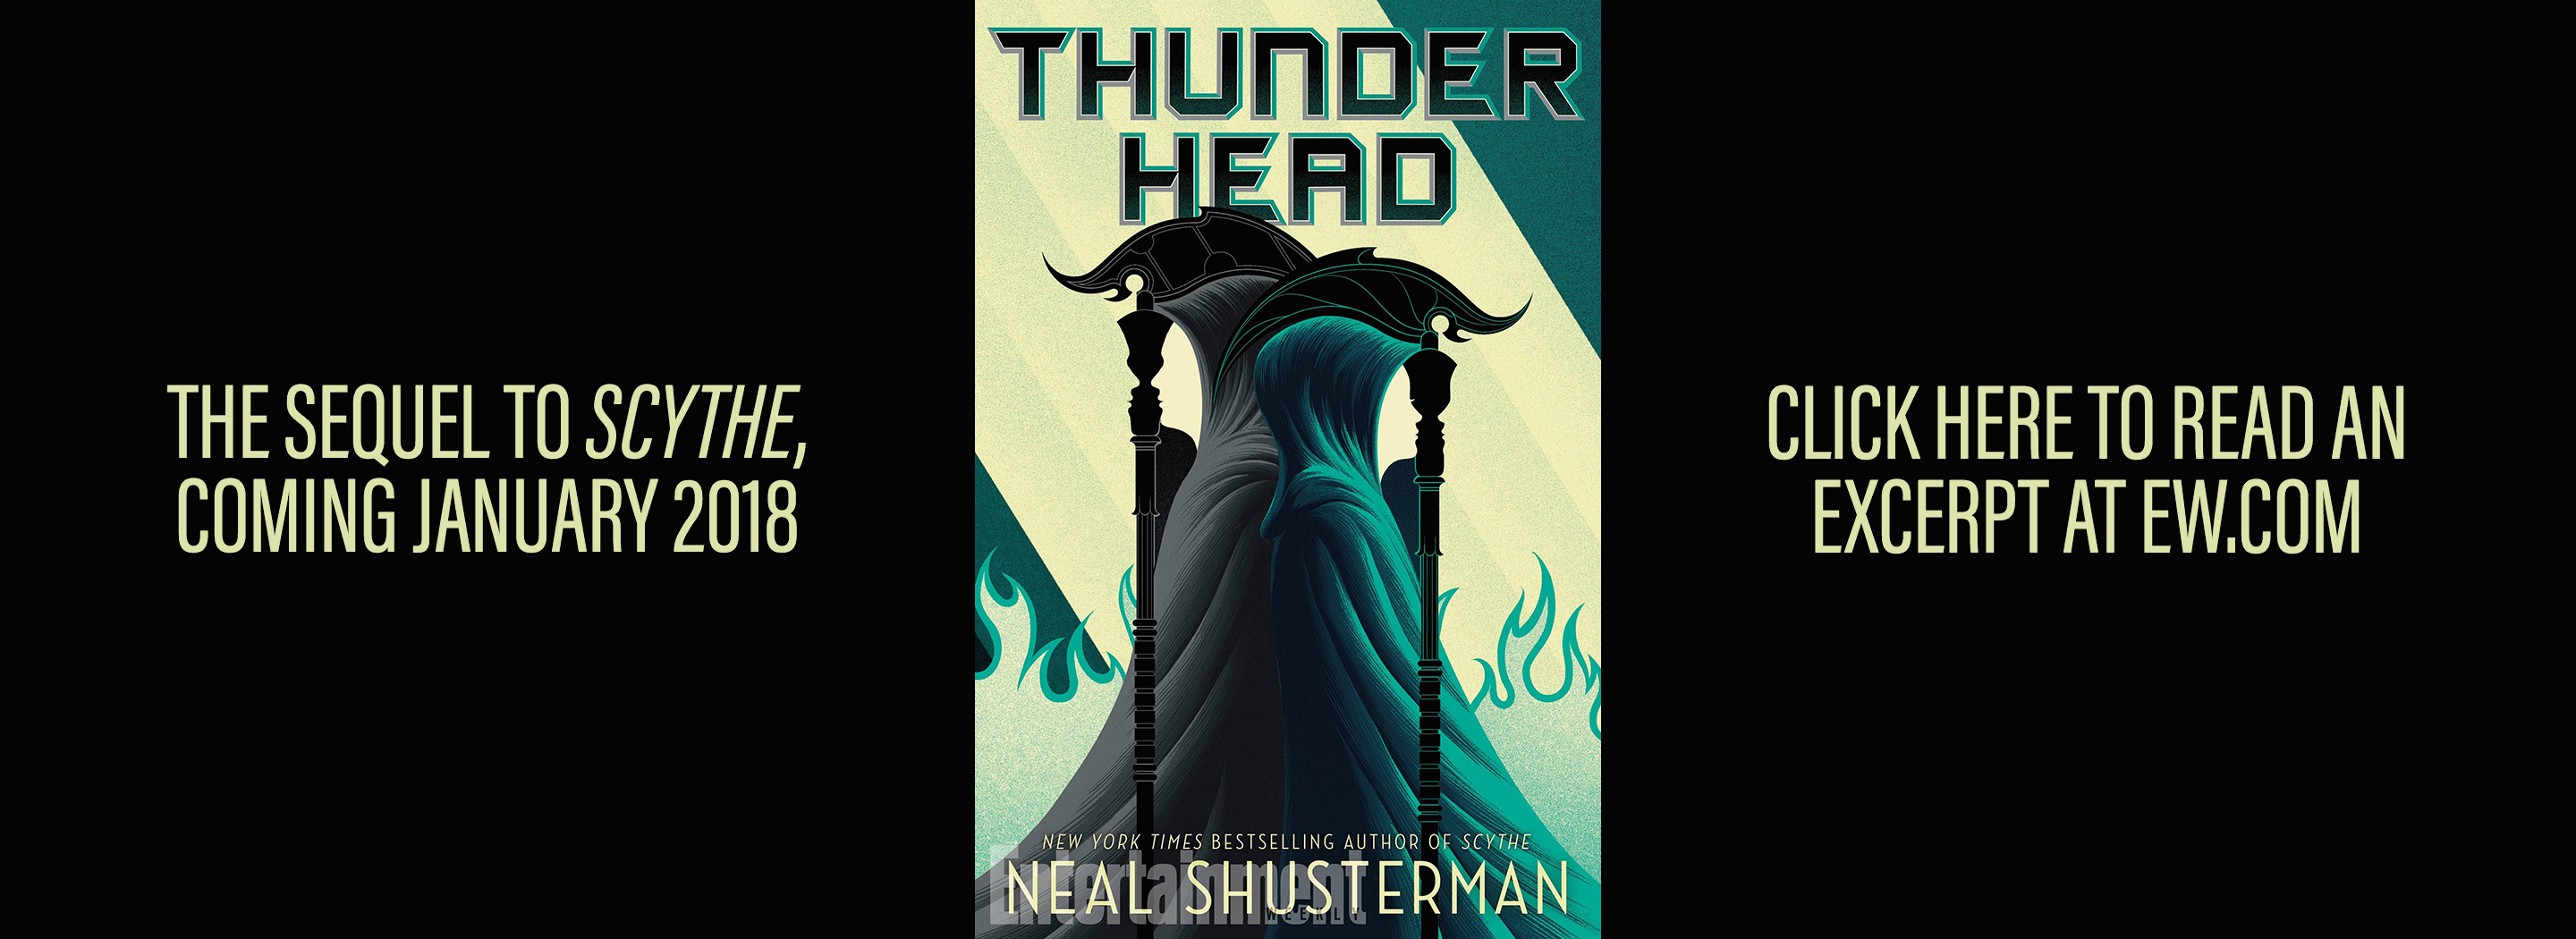 thunderhead neal shusterman